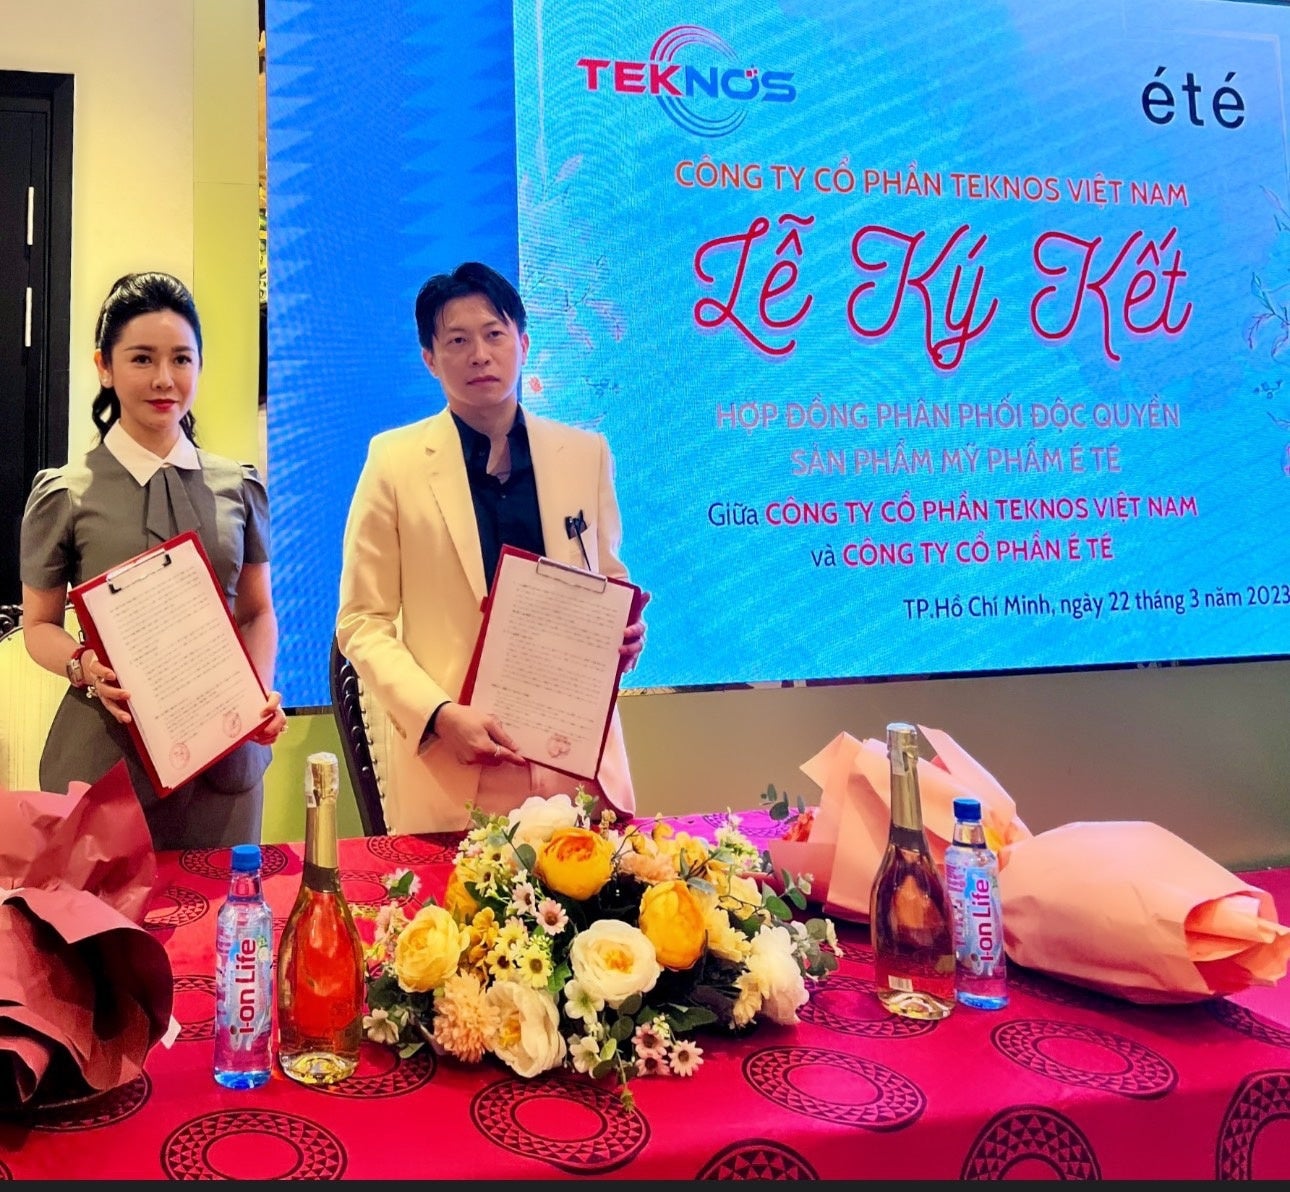 TOYOグループとテクノス・ベトナムグループは、弊社新ブランド「été」の独占的な提携契約を締結しました。